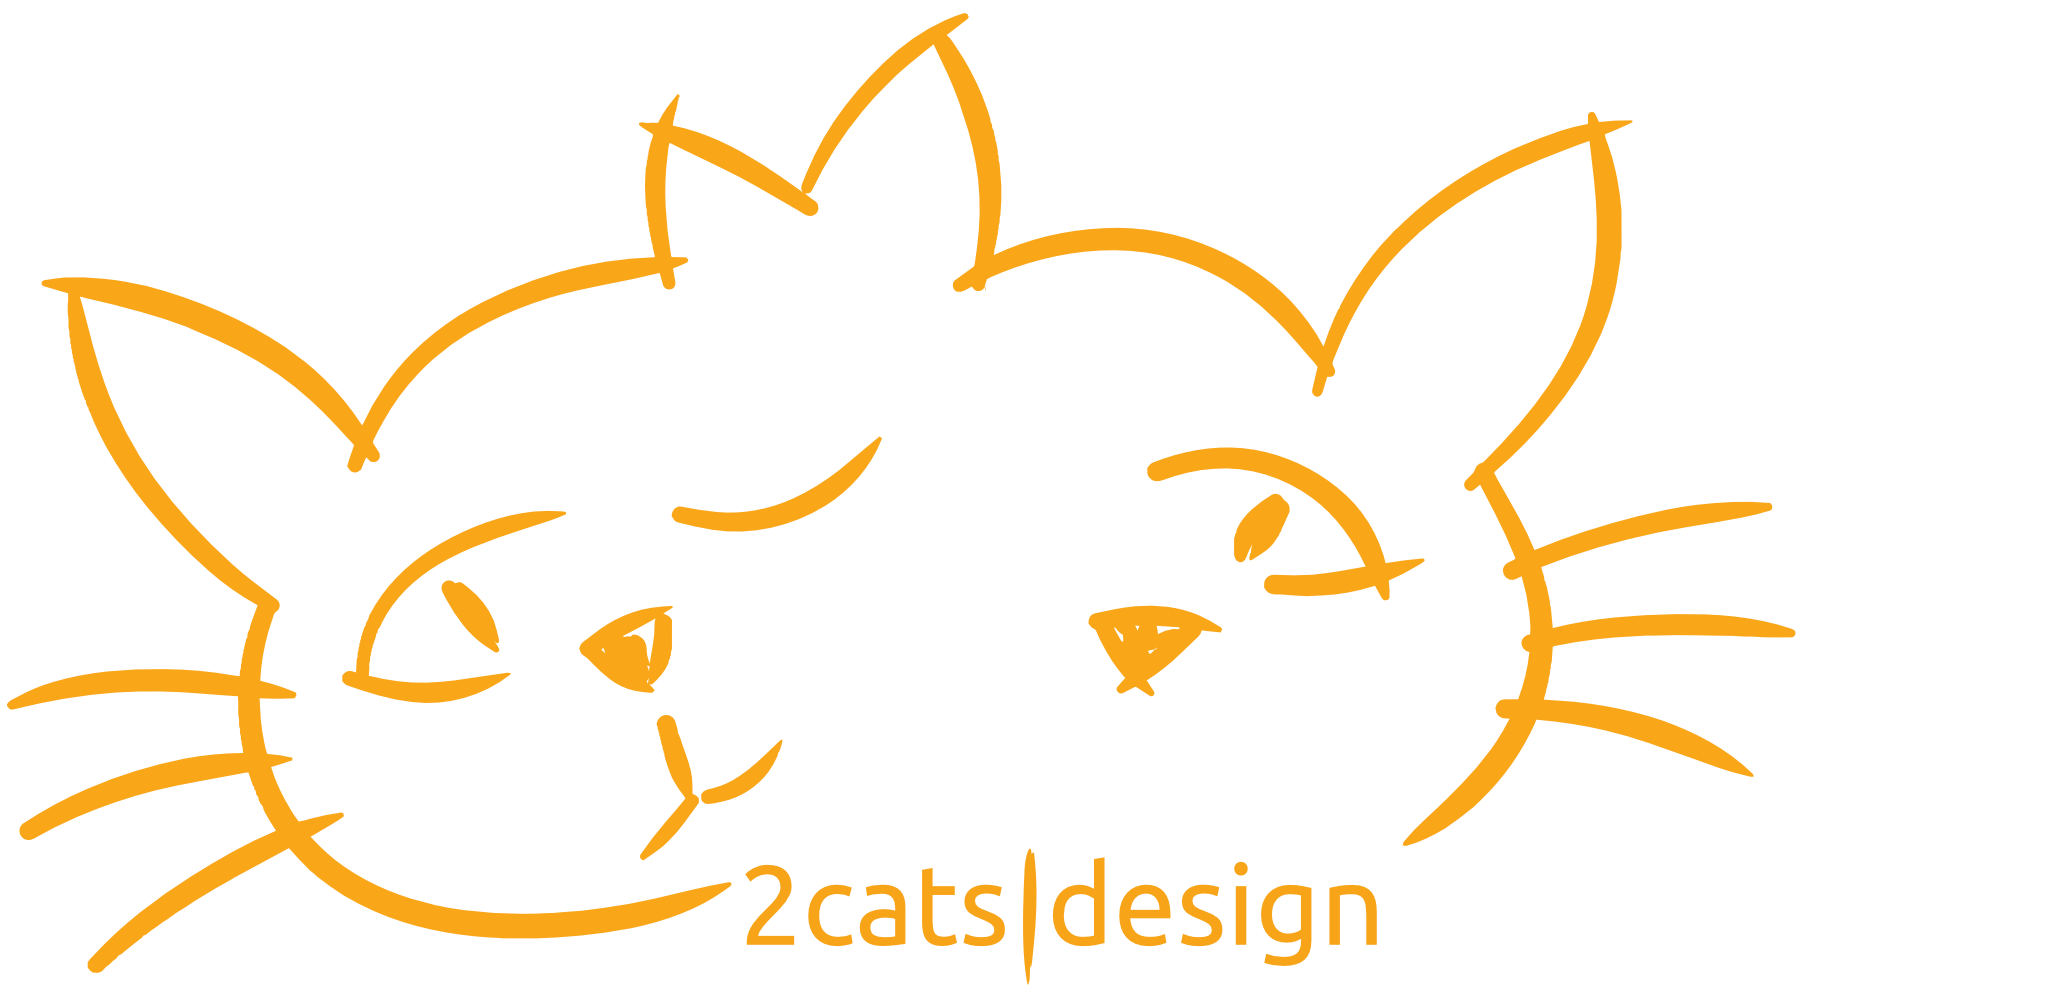 2cats|design